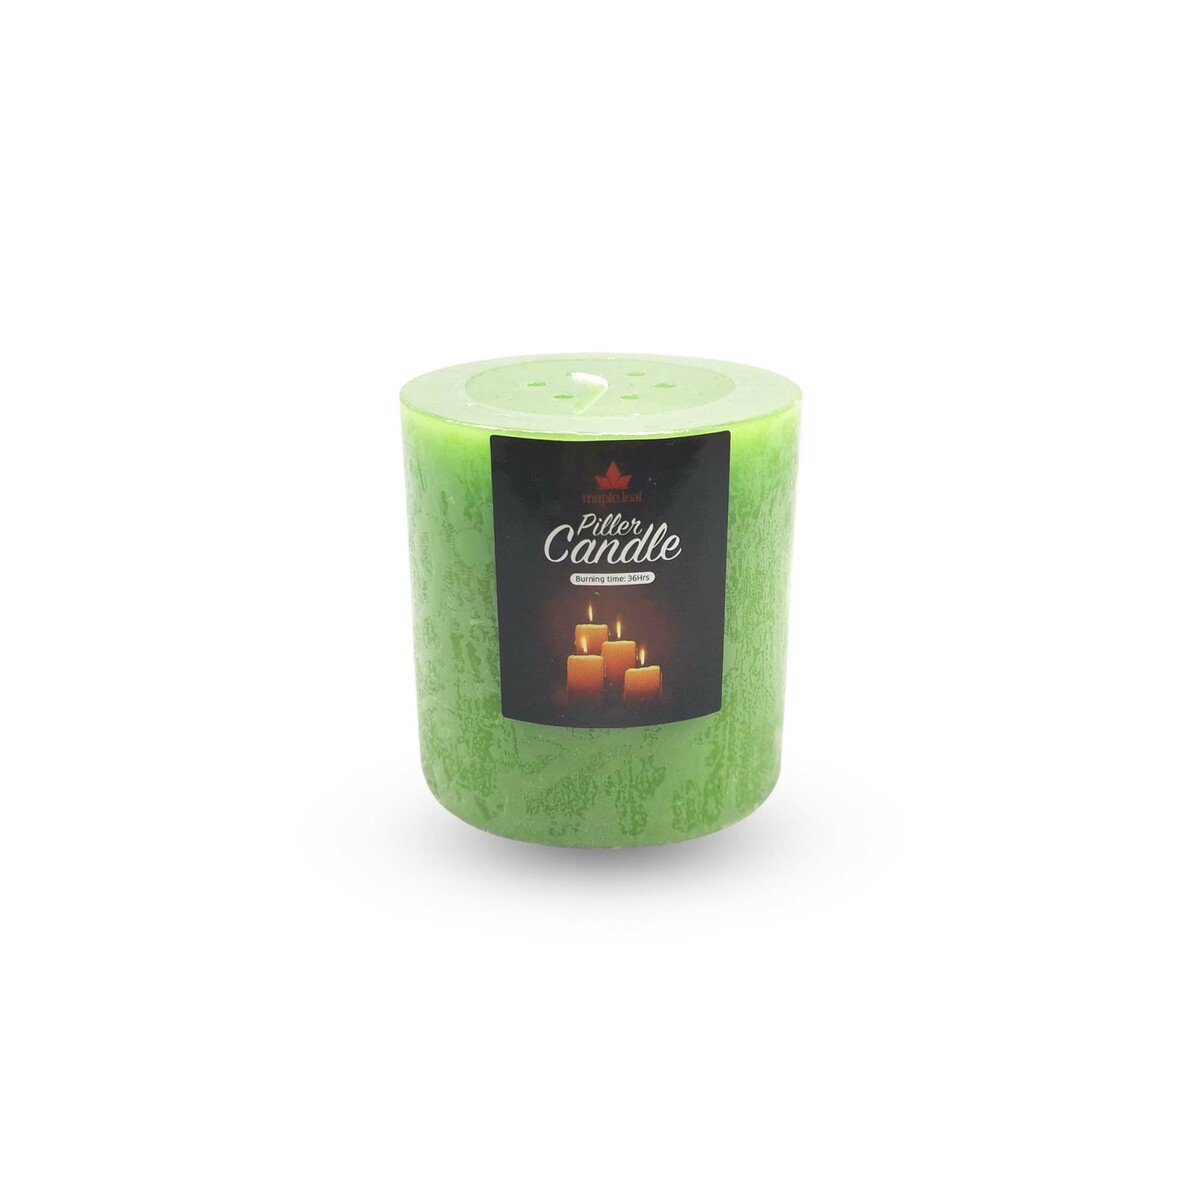 Maple Leaf Pillar Candle P301 3x3inch Green